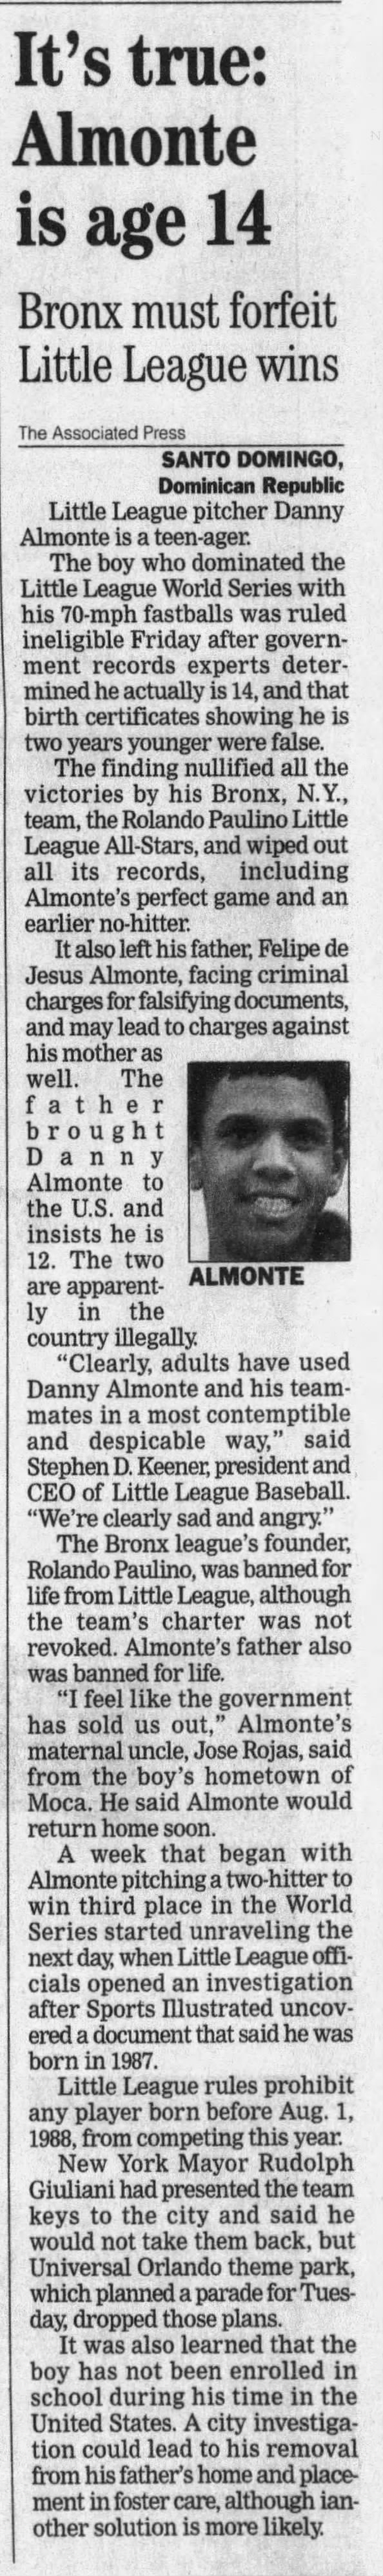 It's true: Almonte is age 14—Bronx must forfeit Little League wins